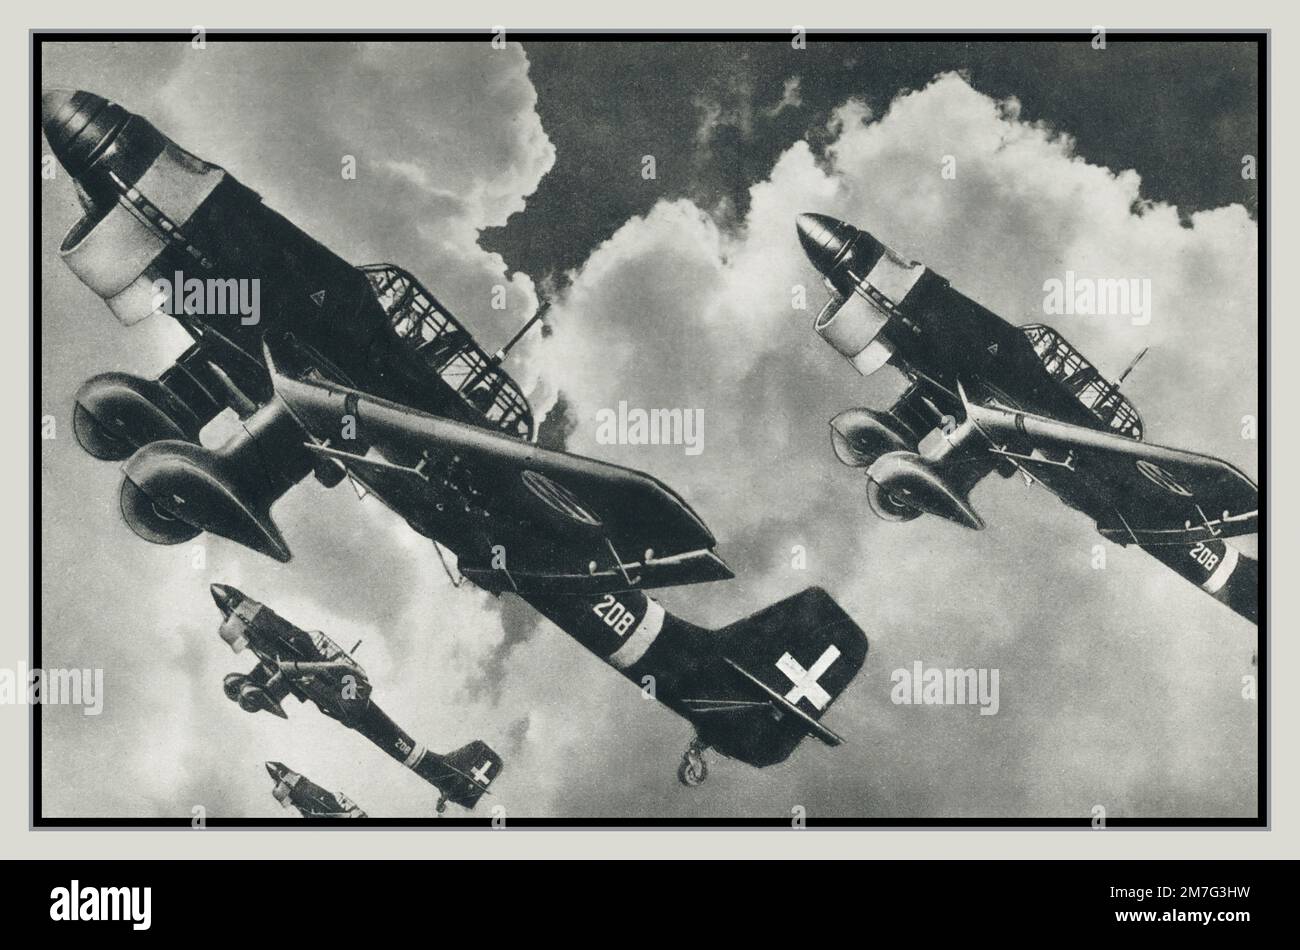 WW2 bomber subacquei tedeschi Stuka forniti all'Aeronautica militare Italiana. 159 Junkers Ju 87 Stuka operò nella Regia Aeronautica Italiana. Dal settembre 1940 al settembre 1943 gli Stukas della Regia Aeronautica combattettero incessantemente nei teatri nordafricani, mediterranei e balcanici, segnando successi che altri aerei di terra non potevano rivendicare nei ranghi italiani. I “Picchiatelli” sono stati fortemente coinvolti nella prima campagna di bombardamento contro Malta e, nel gennaio 1941, insieme a German Stukas, sono riusciti a colpire la portaerei HMS Illustrious. Foto Stock